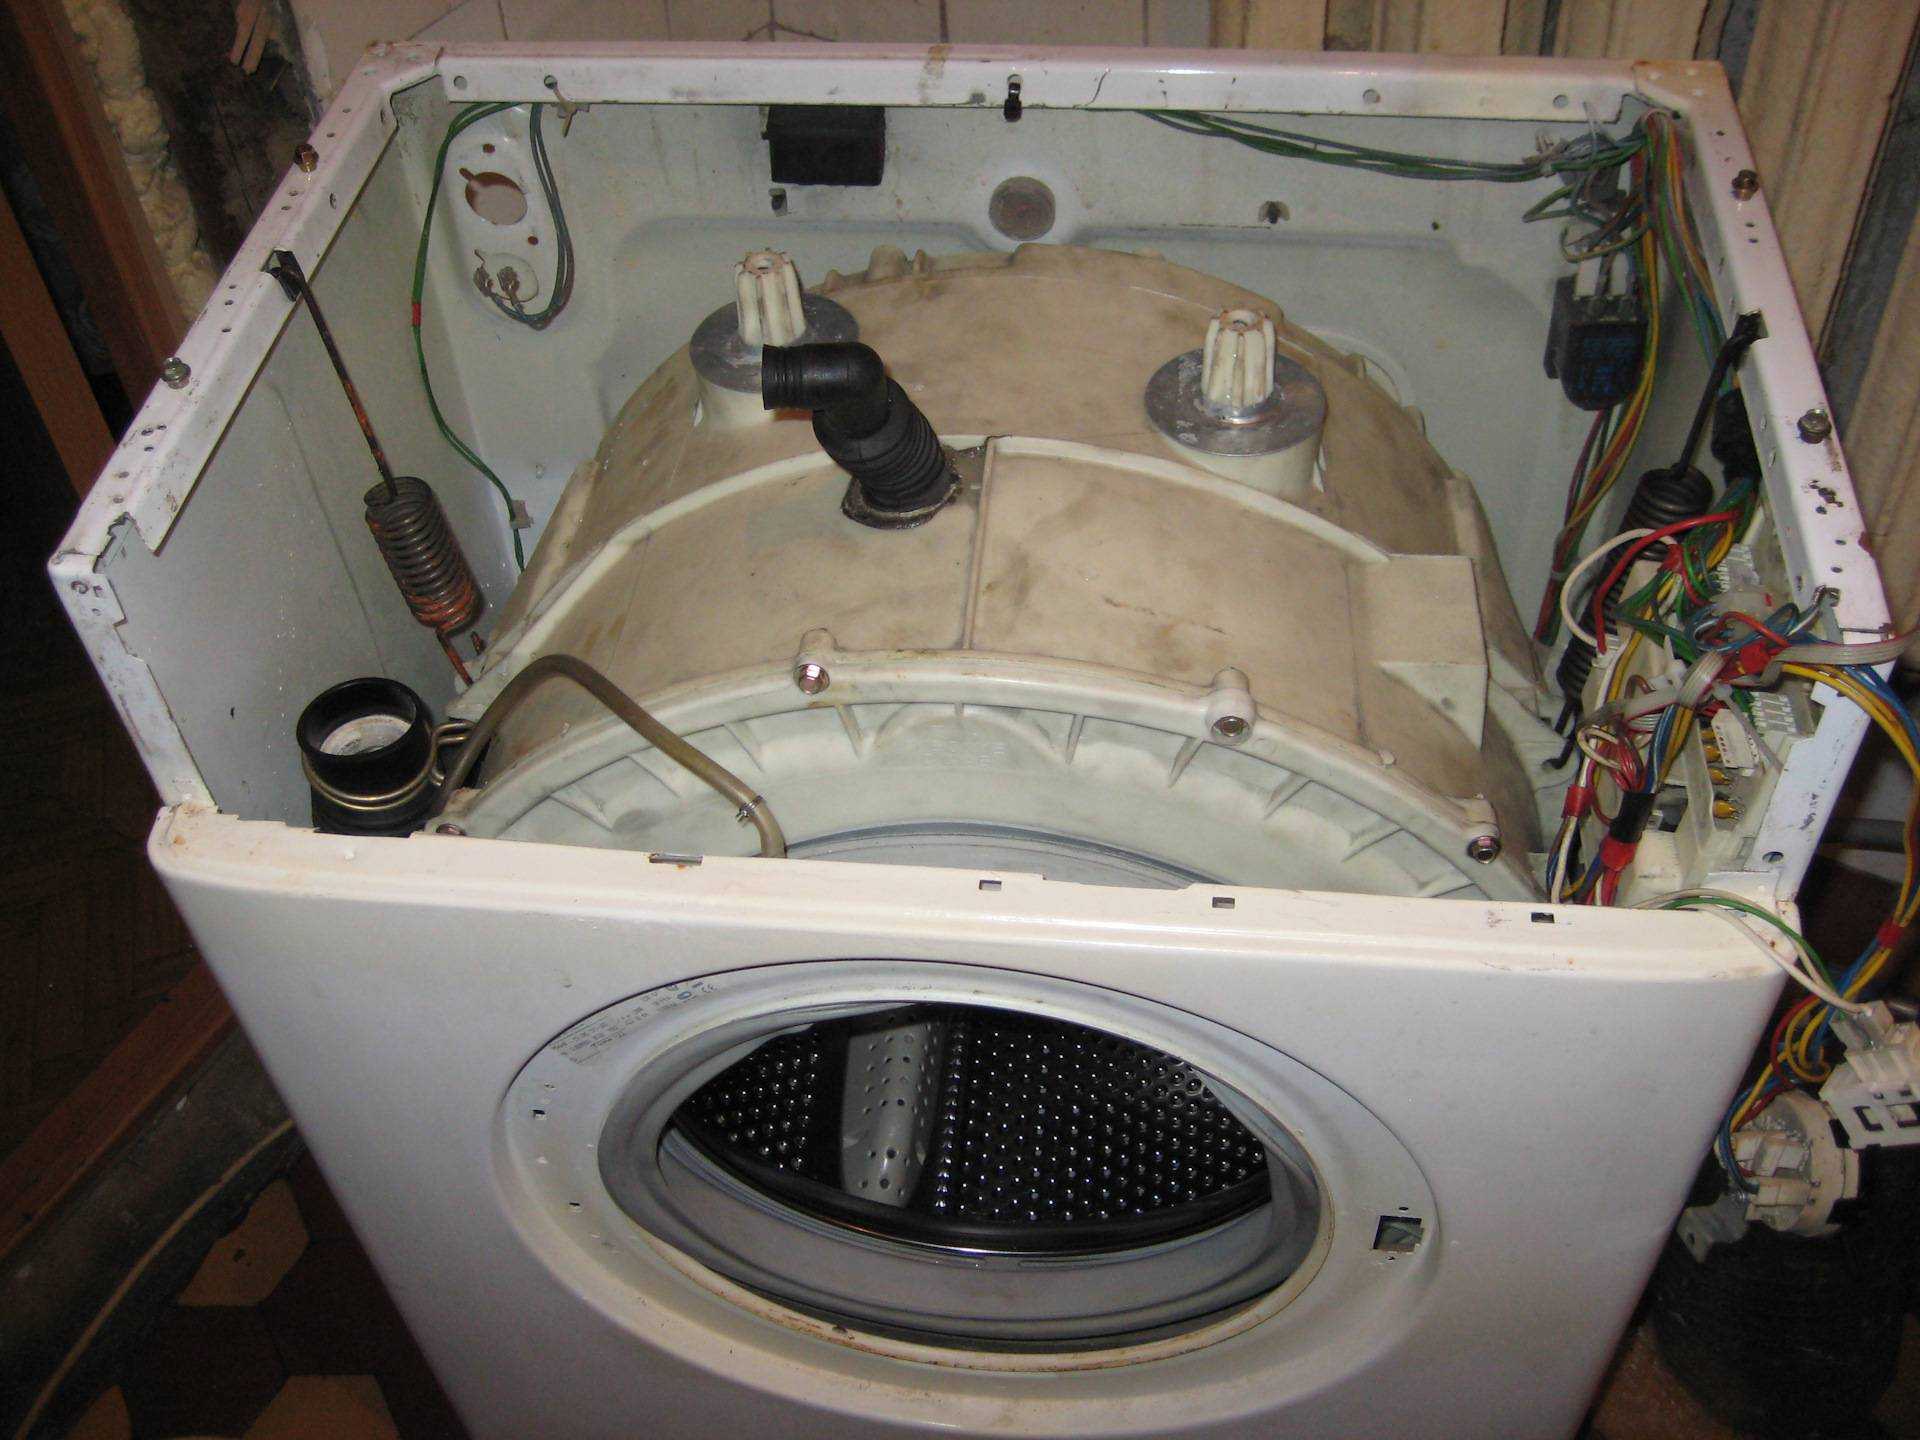 Поломка стиральной машины ariston: неисправности, устранение, причины